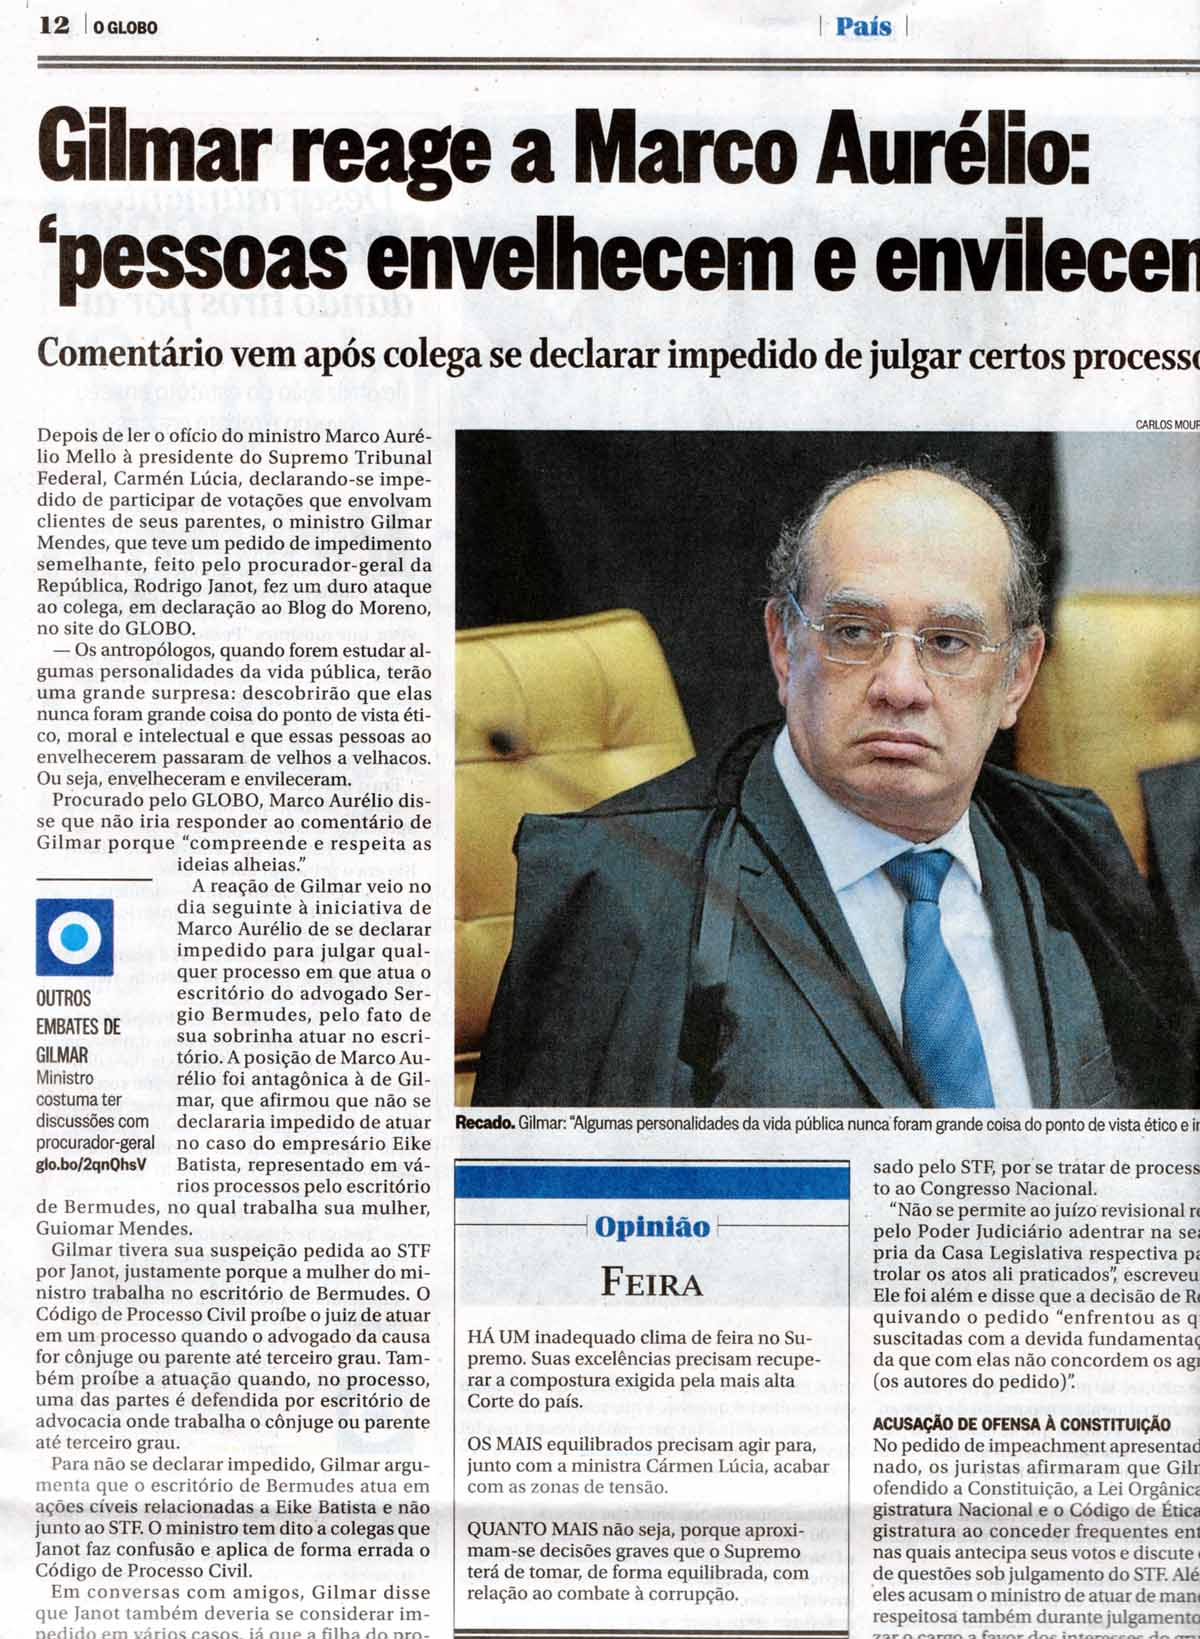 Fac-simile pg. 12 de O Globo, de 12.5.2017